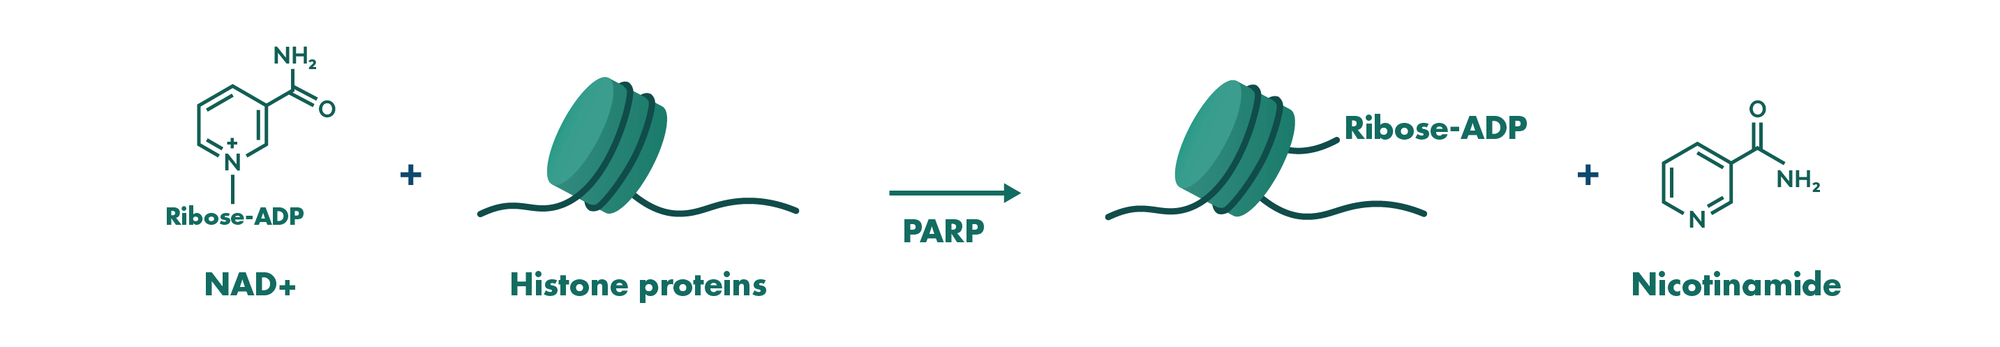 PARP assay principle